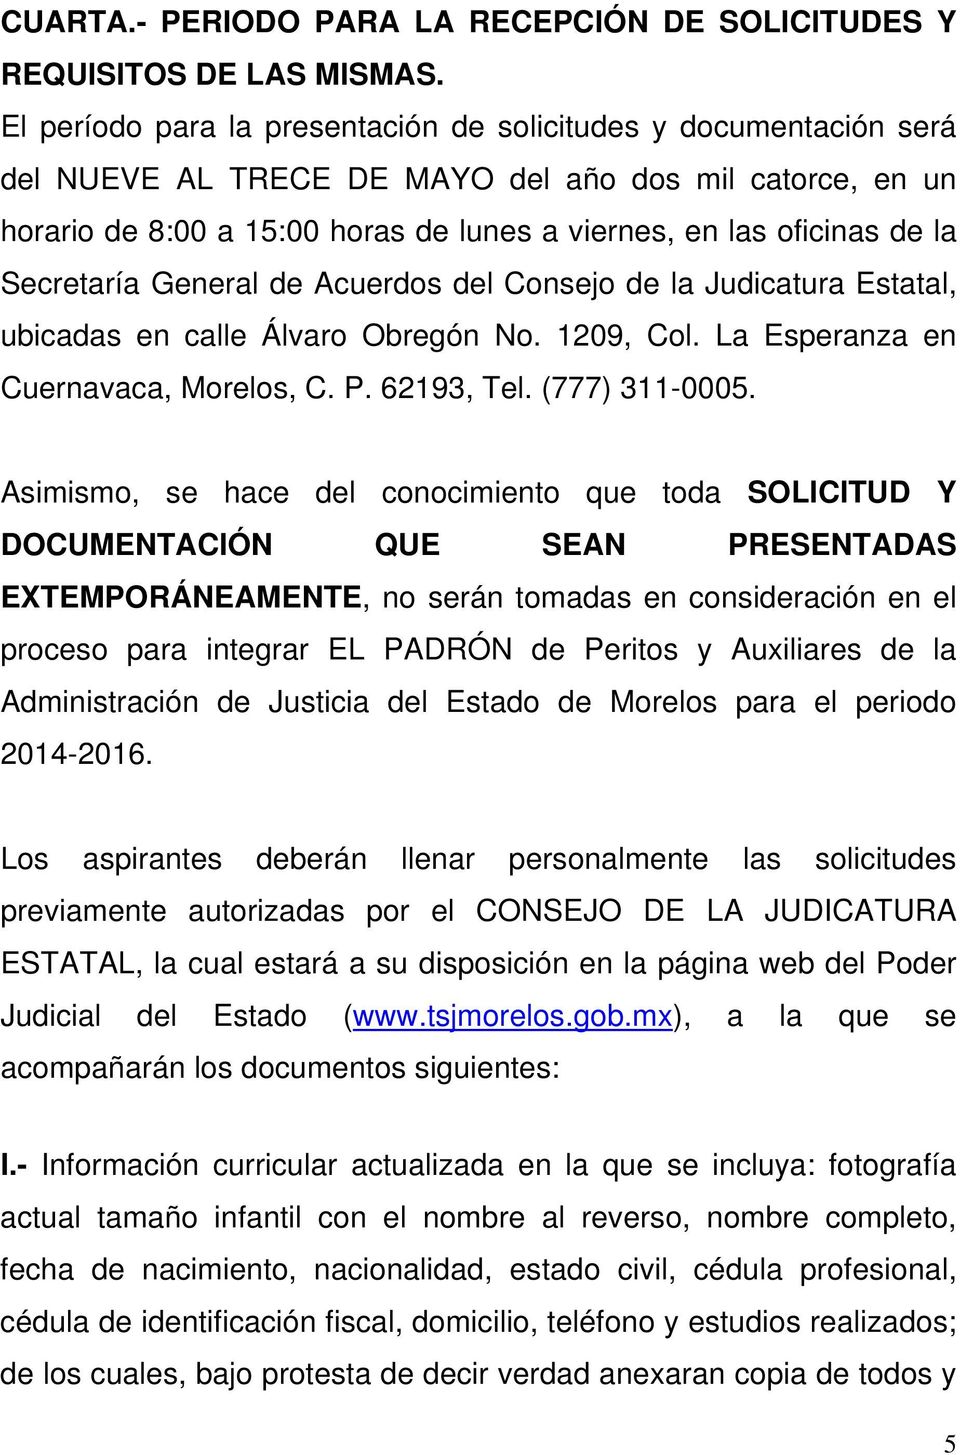 Secretaría General de Acuerdos del Consejo de la Judicatura Estatal, ubicadas en calle Álvaro Obregón No. 1209, Col. La Esperanza en Cuernavaca, Morelos, C. P. 62193, Tel. (777) 311-0005.